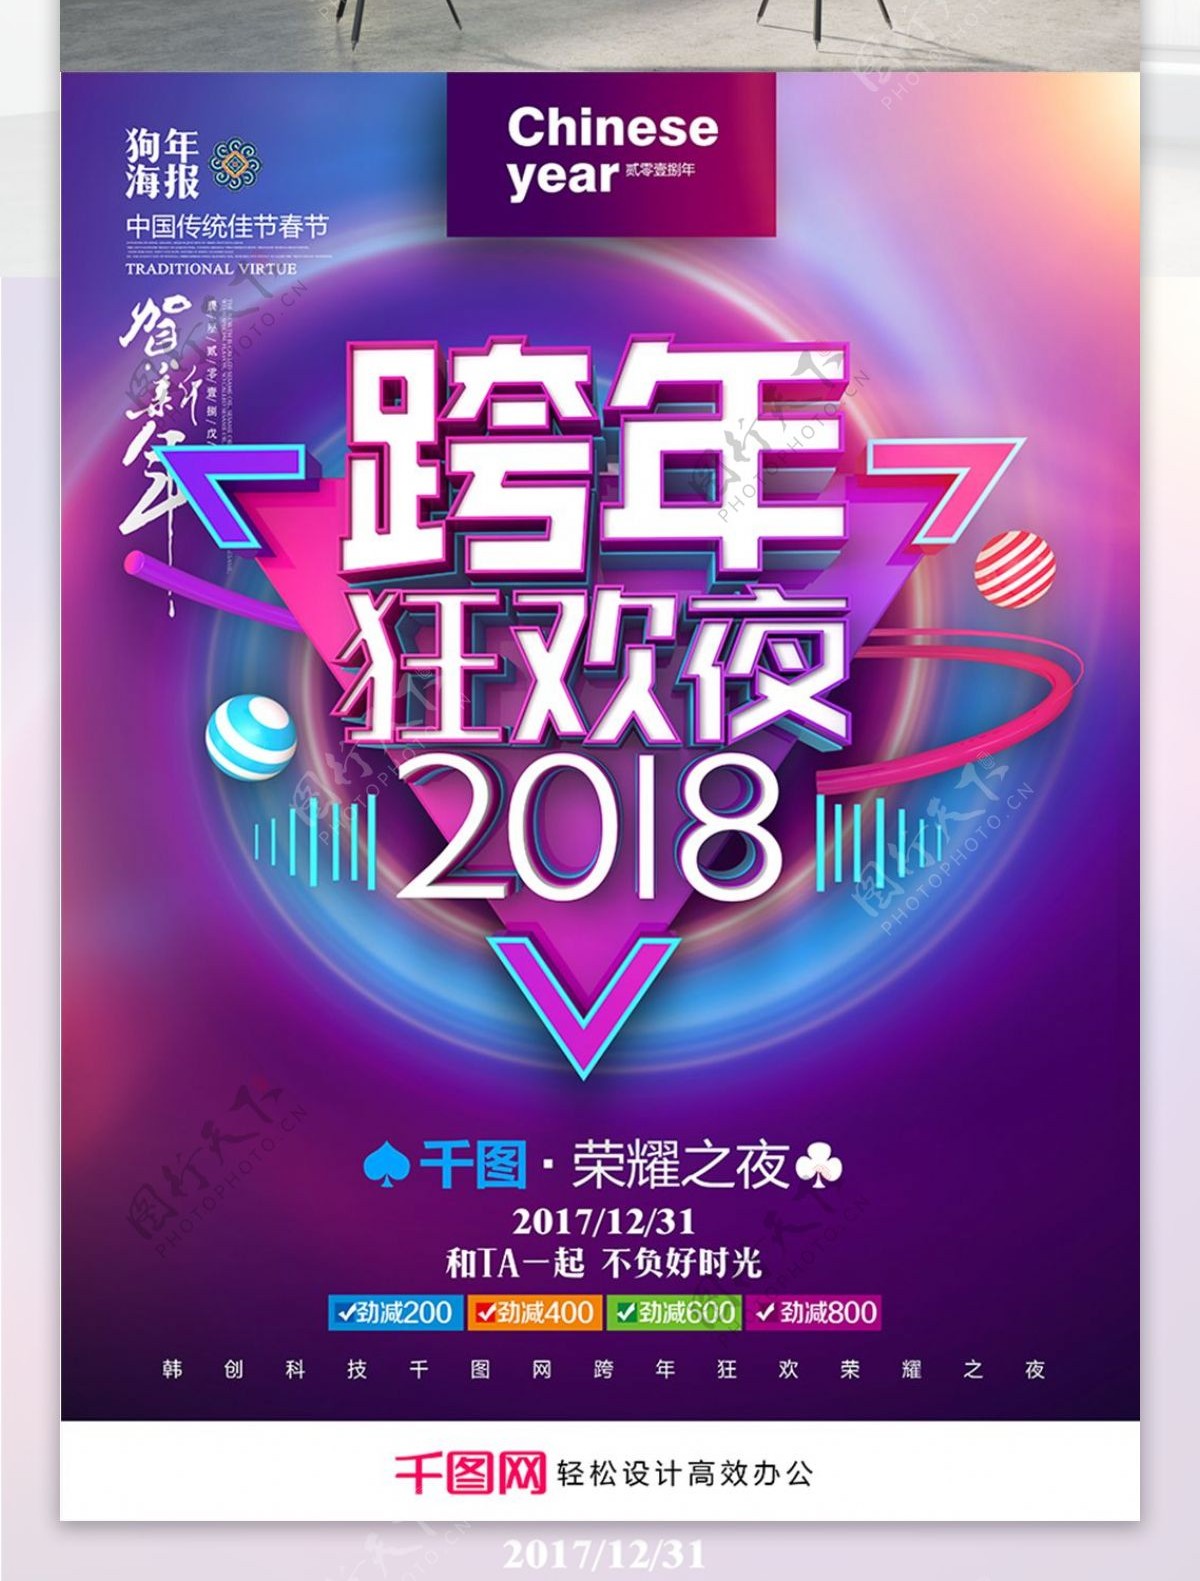 紫色创意炫酷跨年狂欢夜2018跨年海报